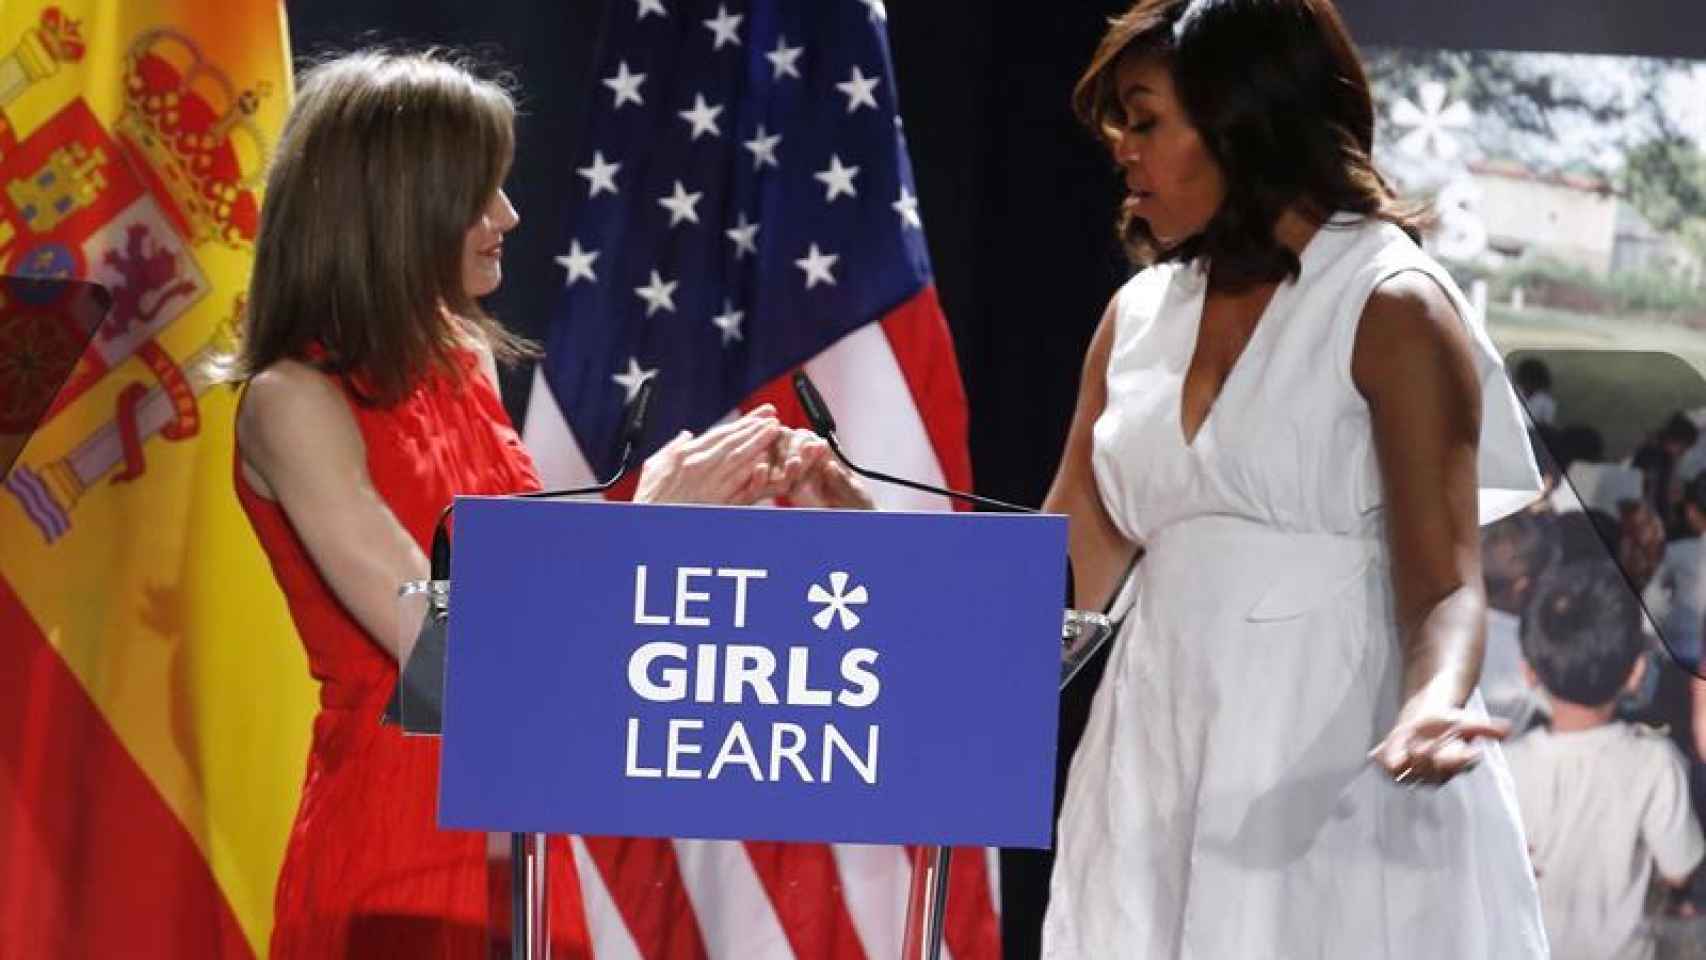 La reina Letizia felicita a la primera dama de EEUU, Michelle Obama, tras la conferencia hoy en Madrid sobre su iniciativa Let Girls Learn